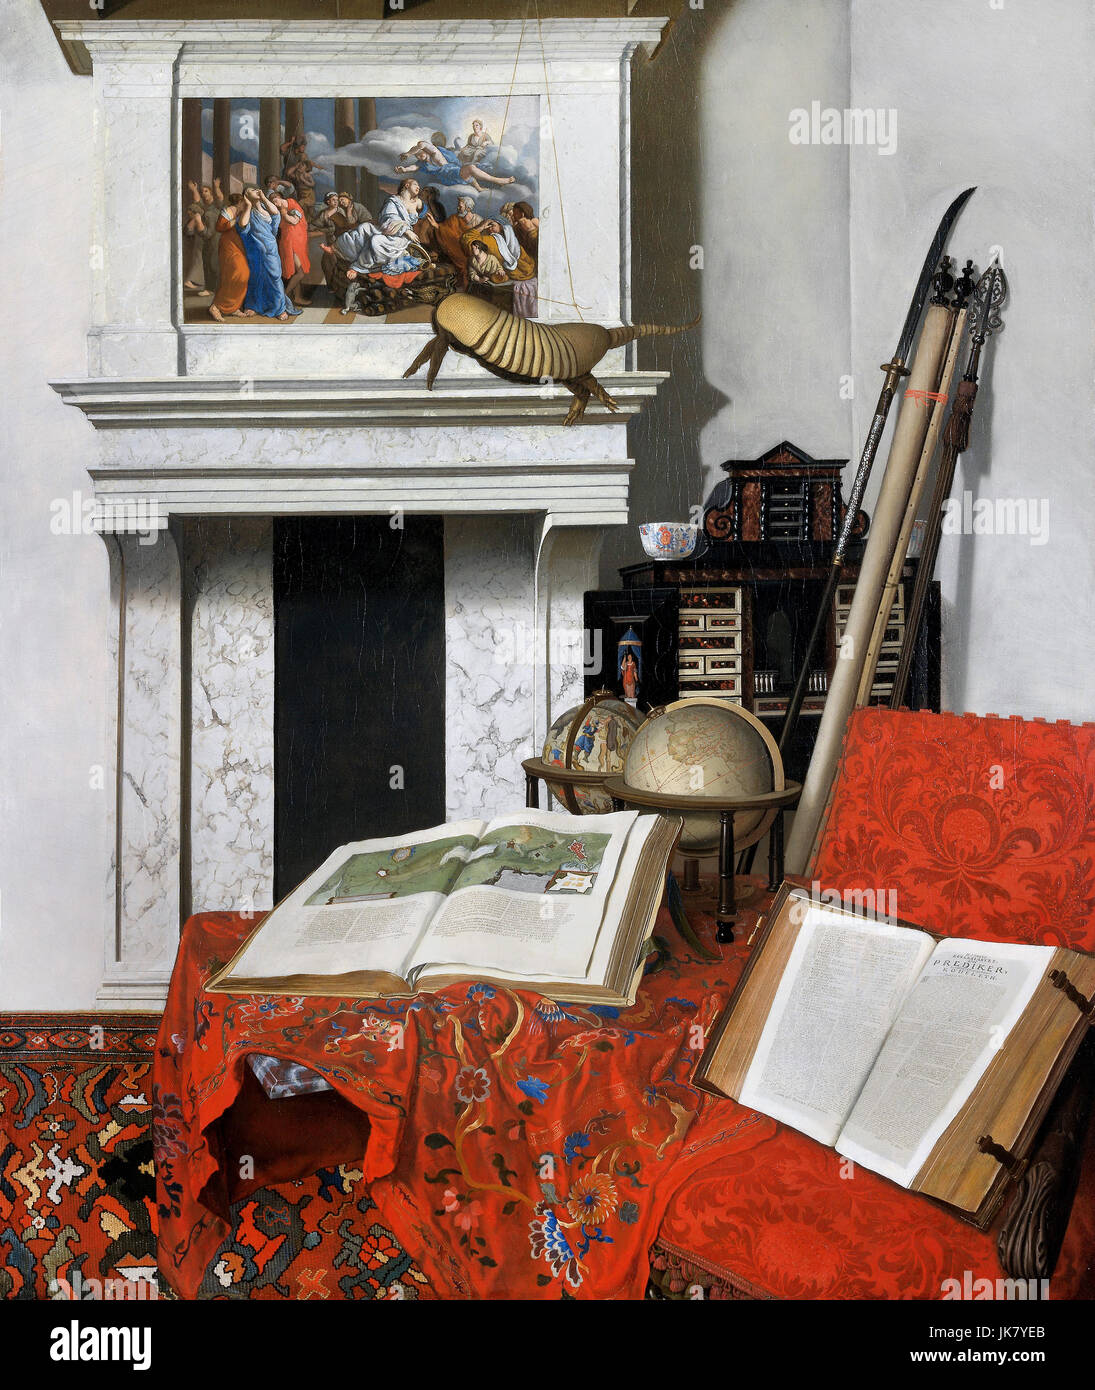 Jan van der Heyden, coin chambre avec des curiosités 1712 Huile sur toile. Musée des beaux-arts, Budapest, Hongrie. Banque D'Images